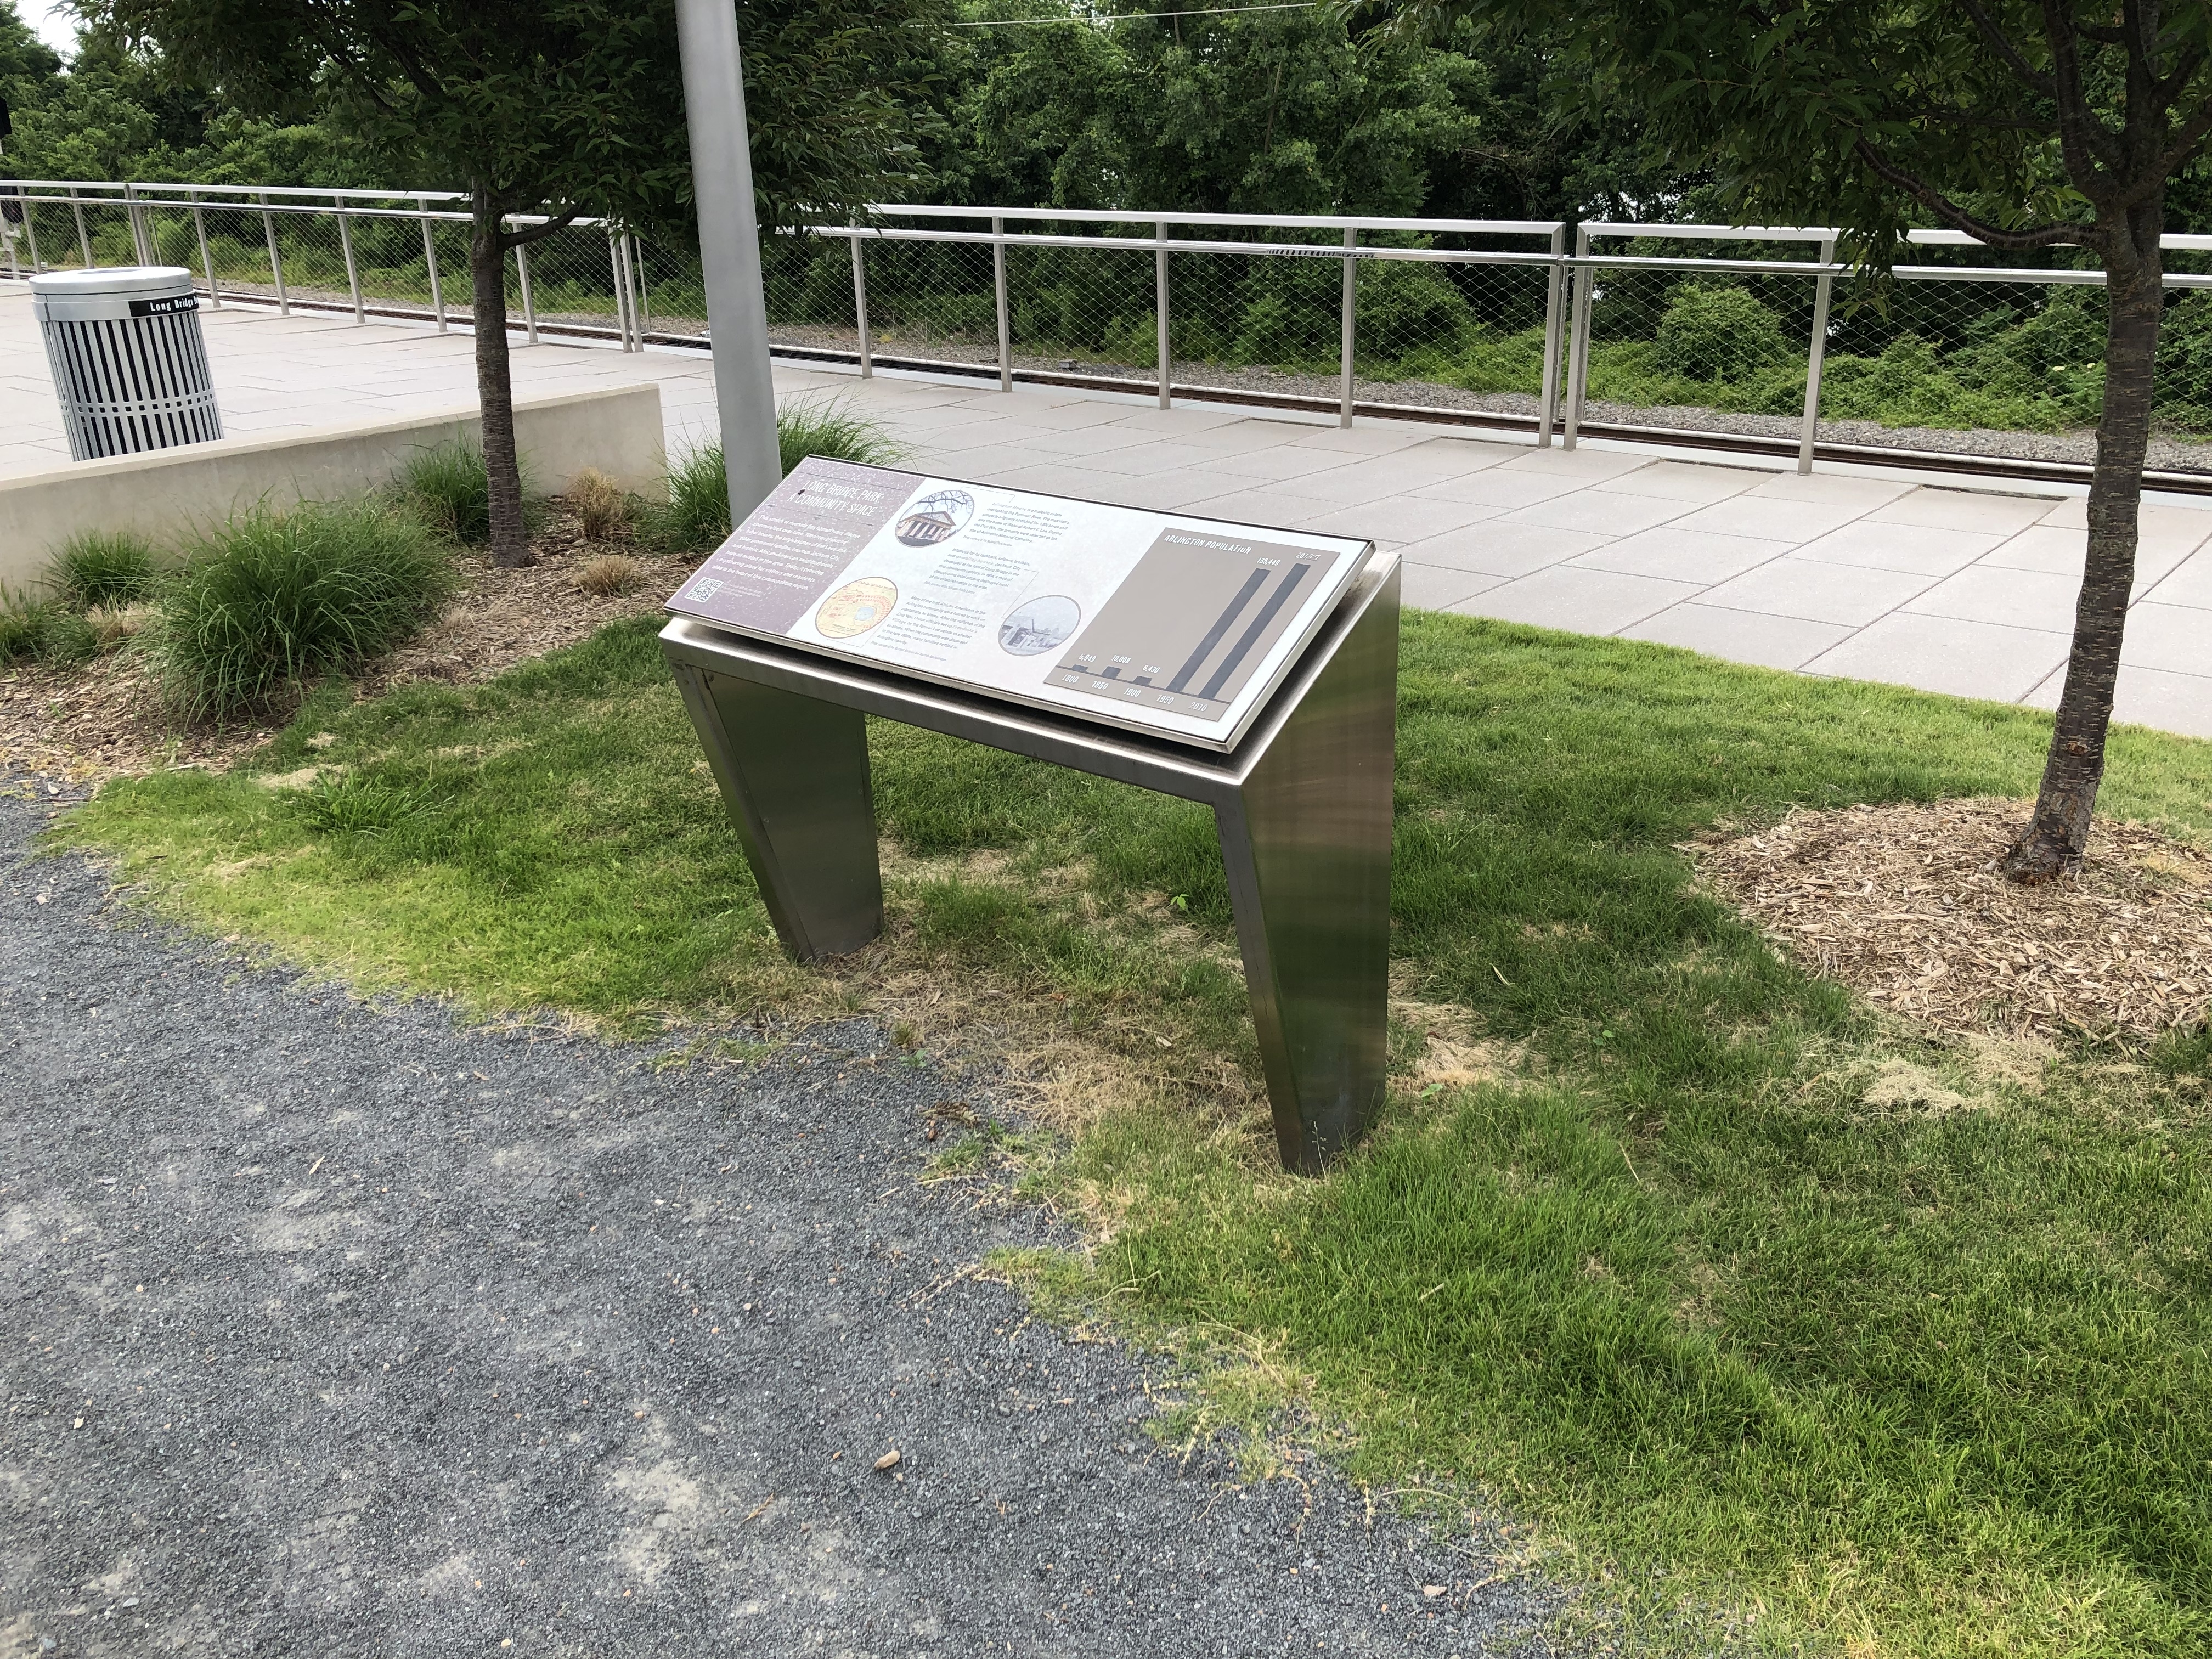 Long Bridge Park: A Community Space Marker